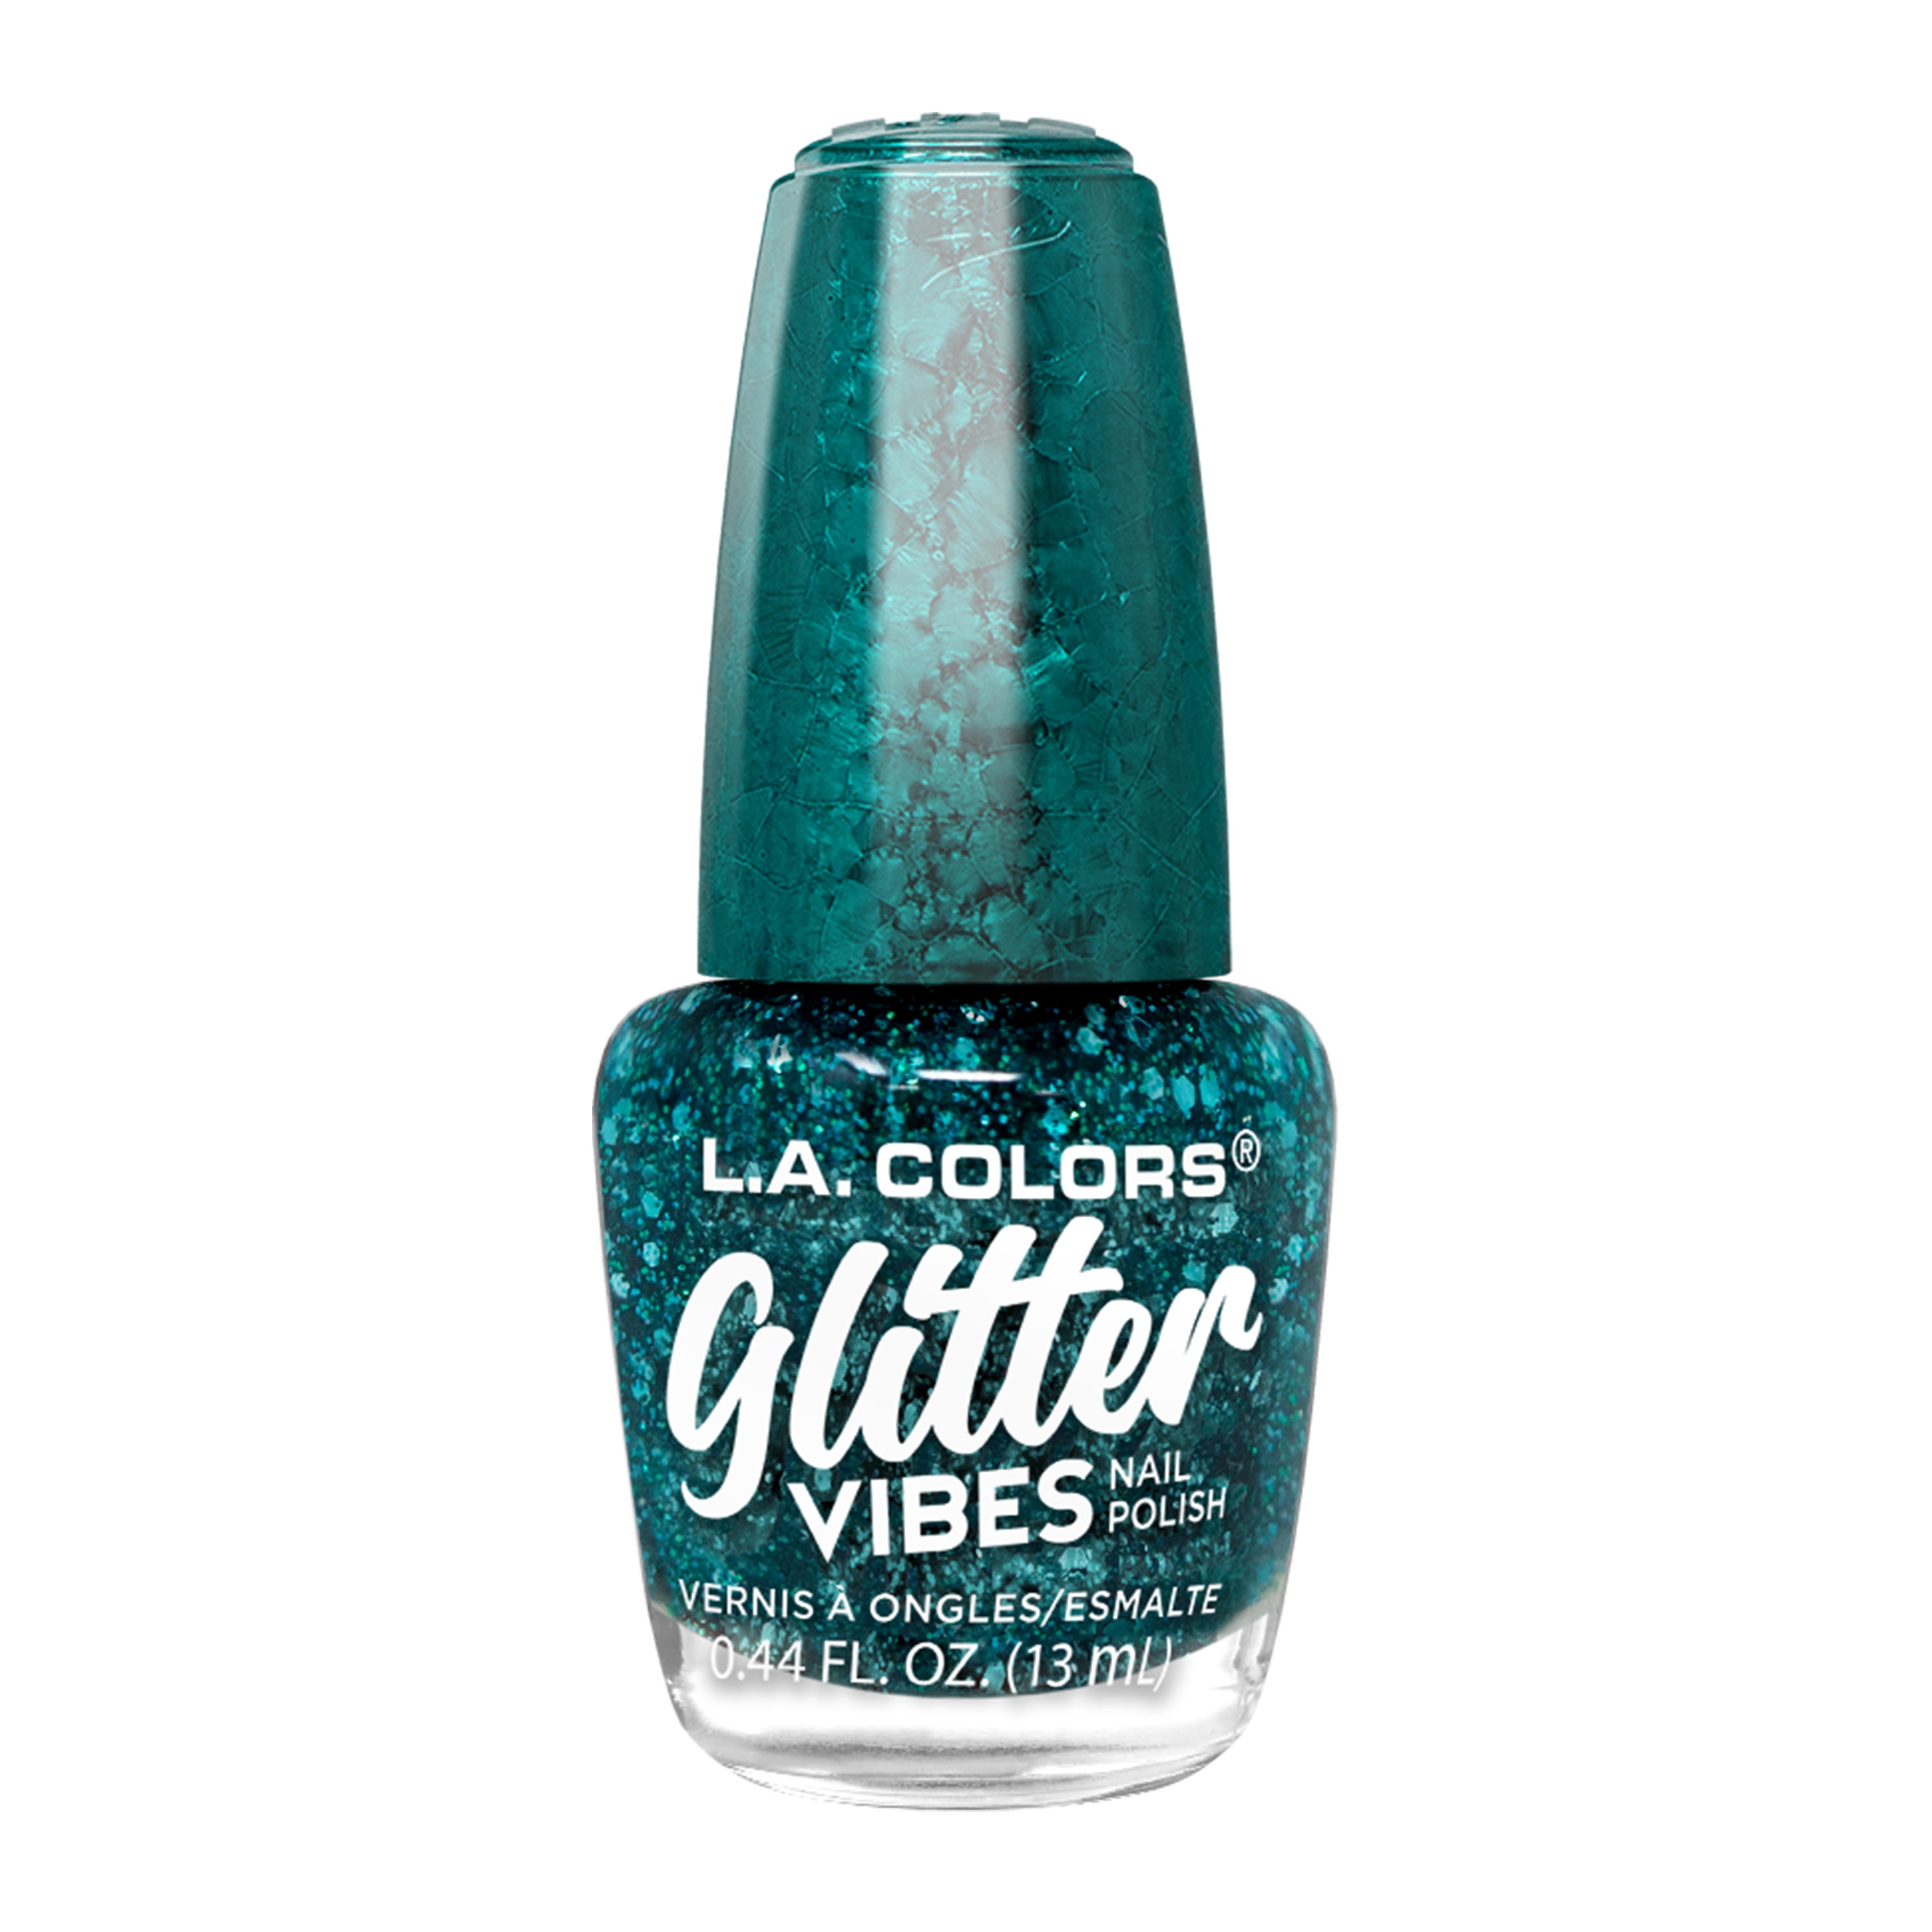 L.A. COLORS Glitter Vibes Nail Polish, Drippin', 0.44 fl oz